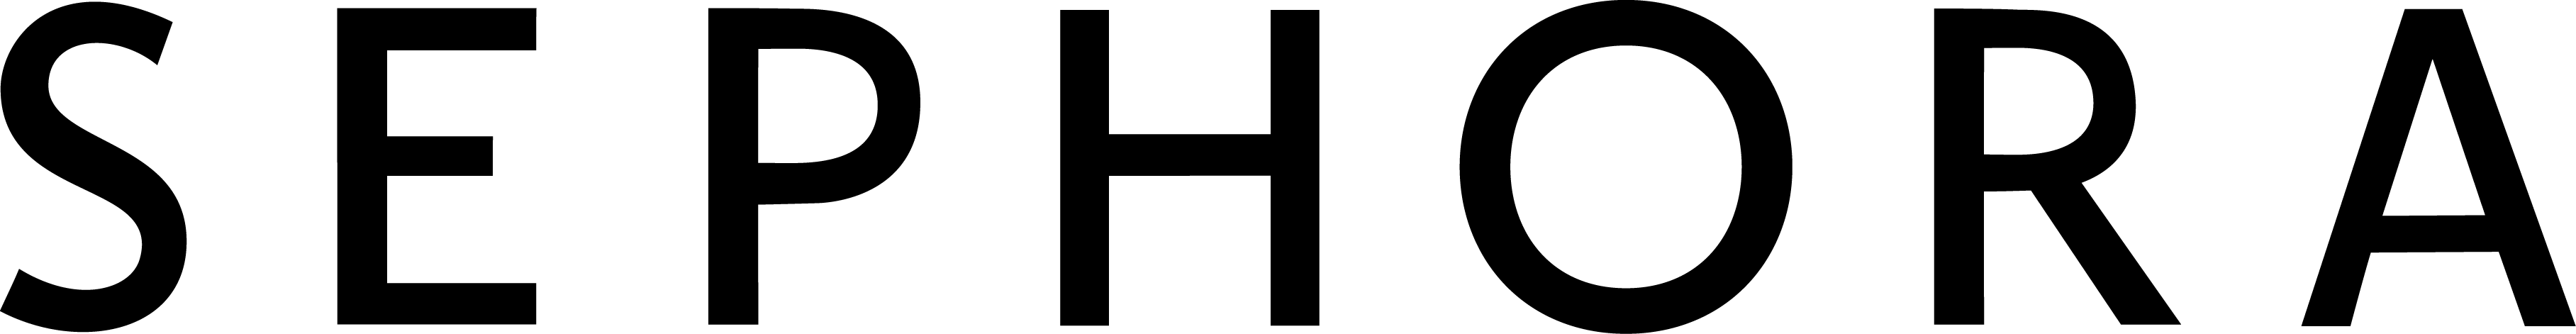 Sephora VDP logo